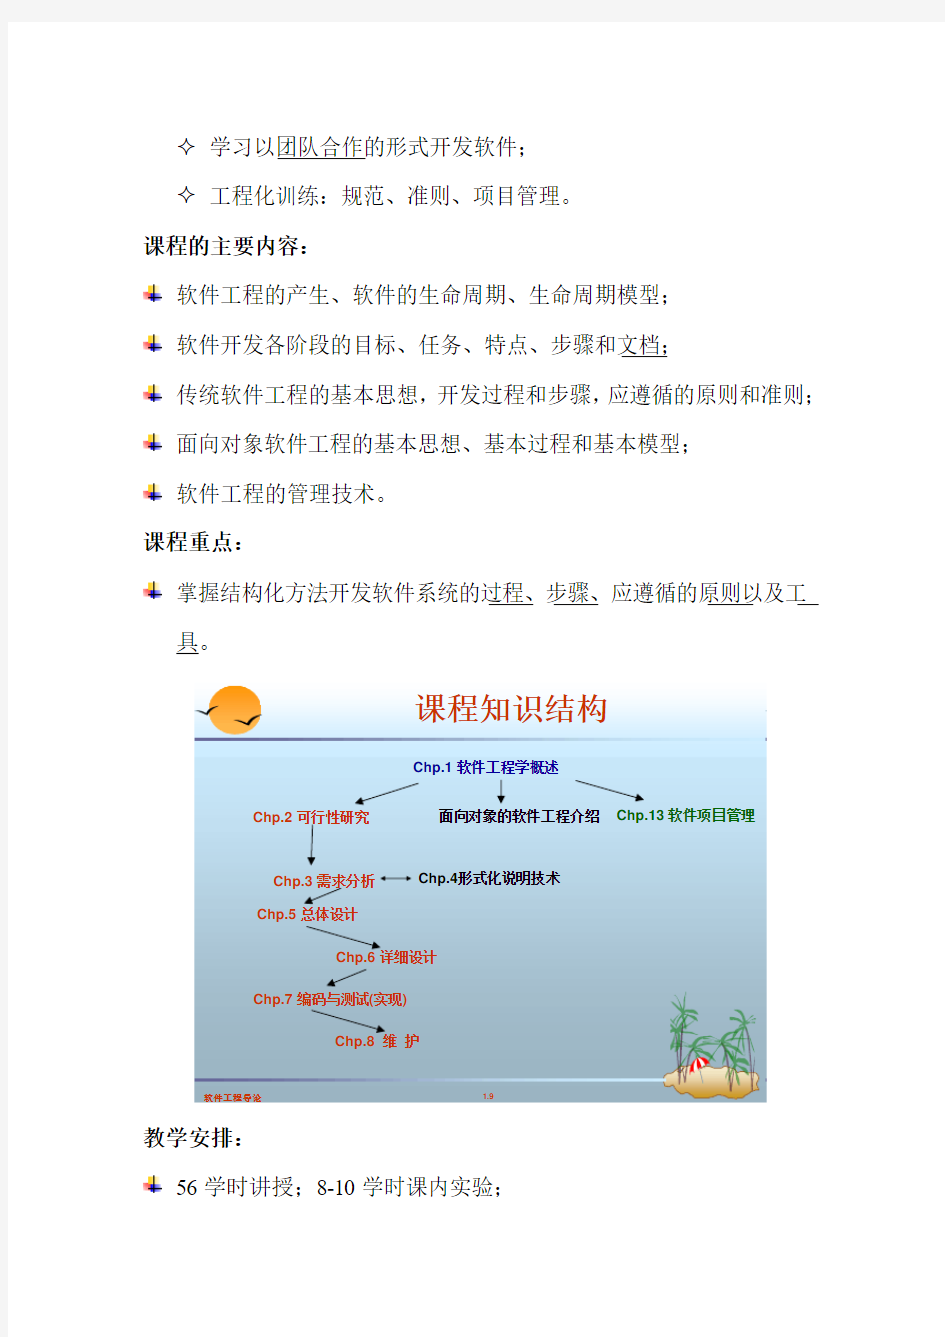 惠州学院软件工程导论课程介绍  刘宇芳老师